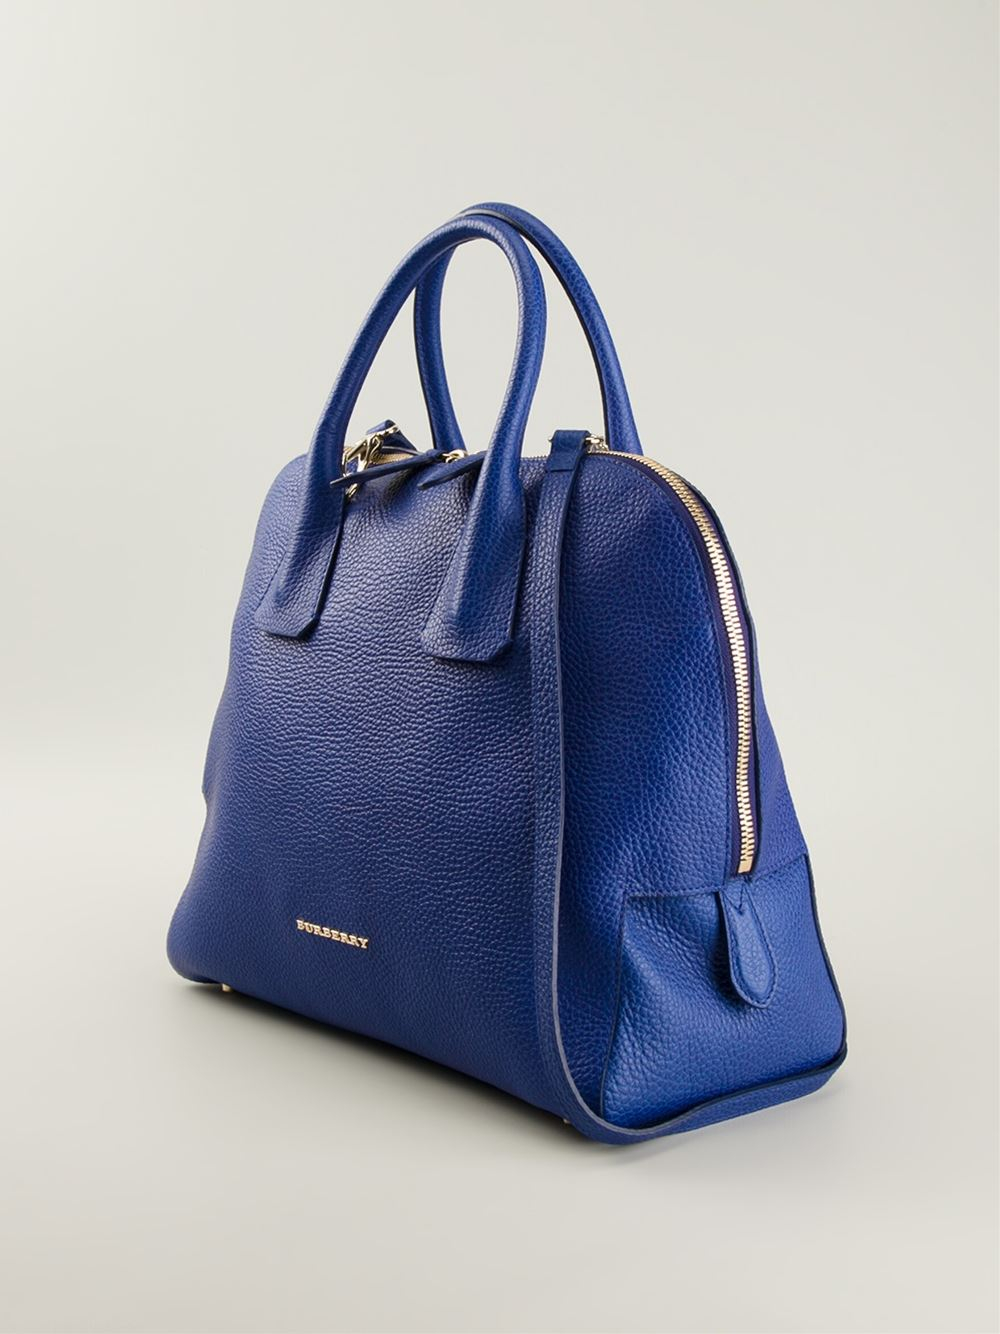 Lyst - Burberry Medium Bowling Bag in Blue